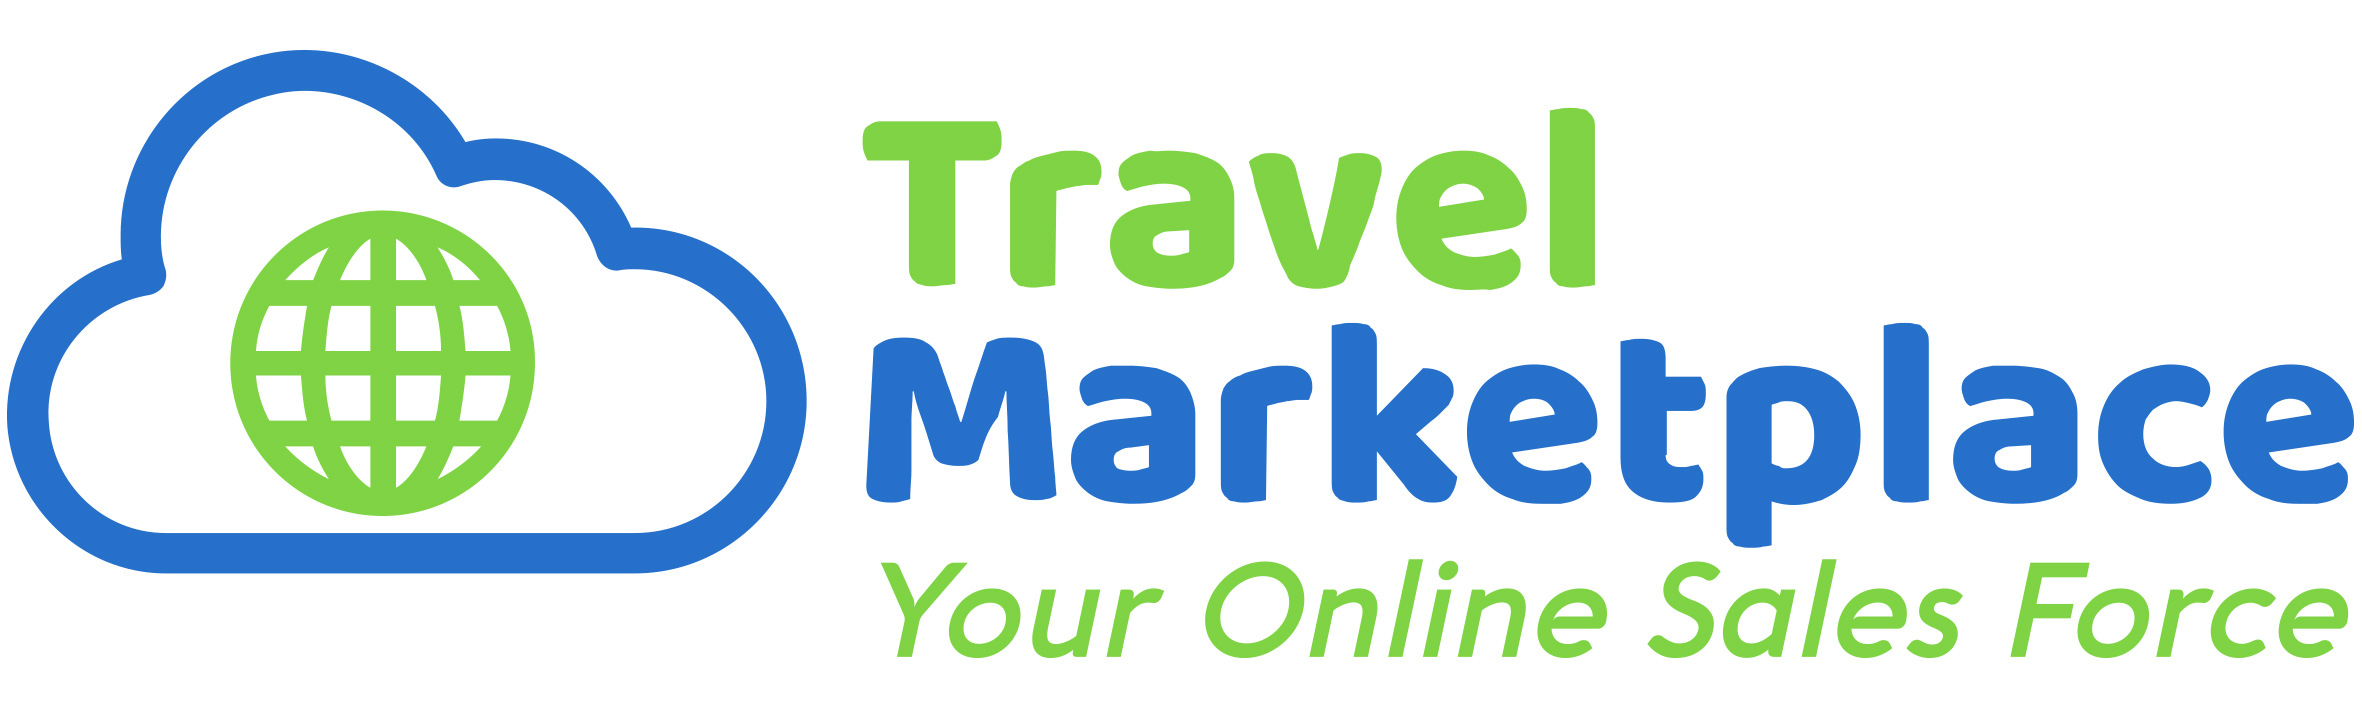 travel marketplace